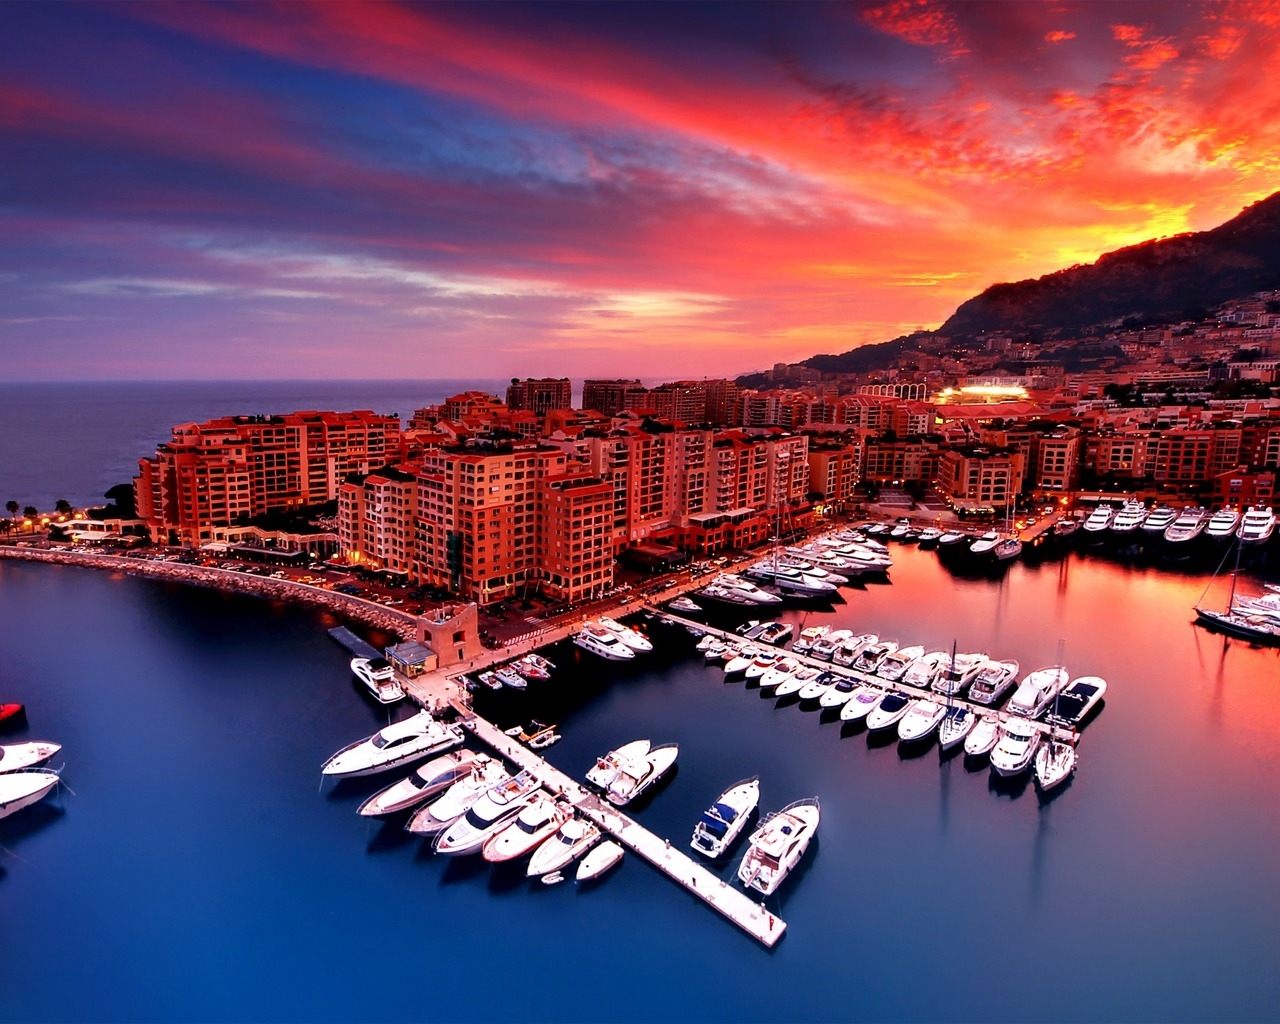 Sunrise in Monaco for 1280 x 1024 resolution